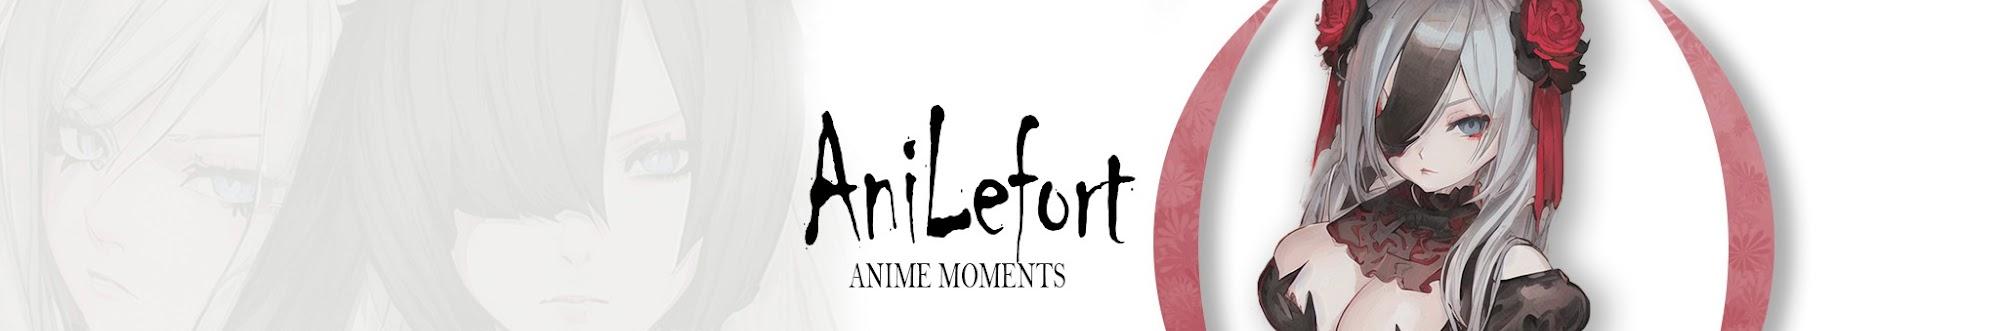 AniLefort